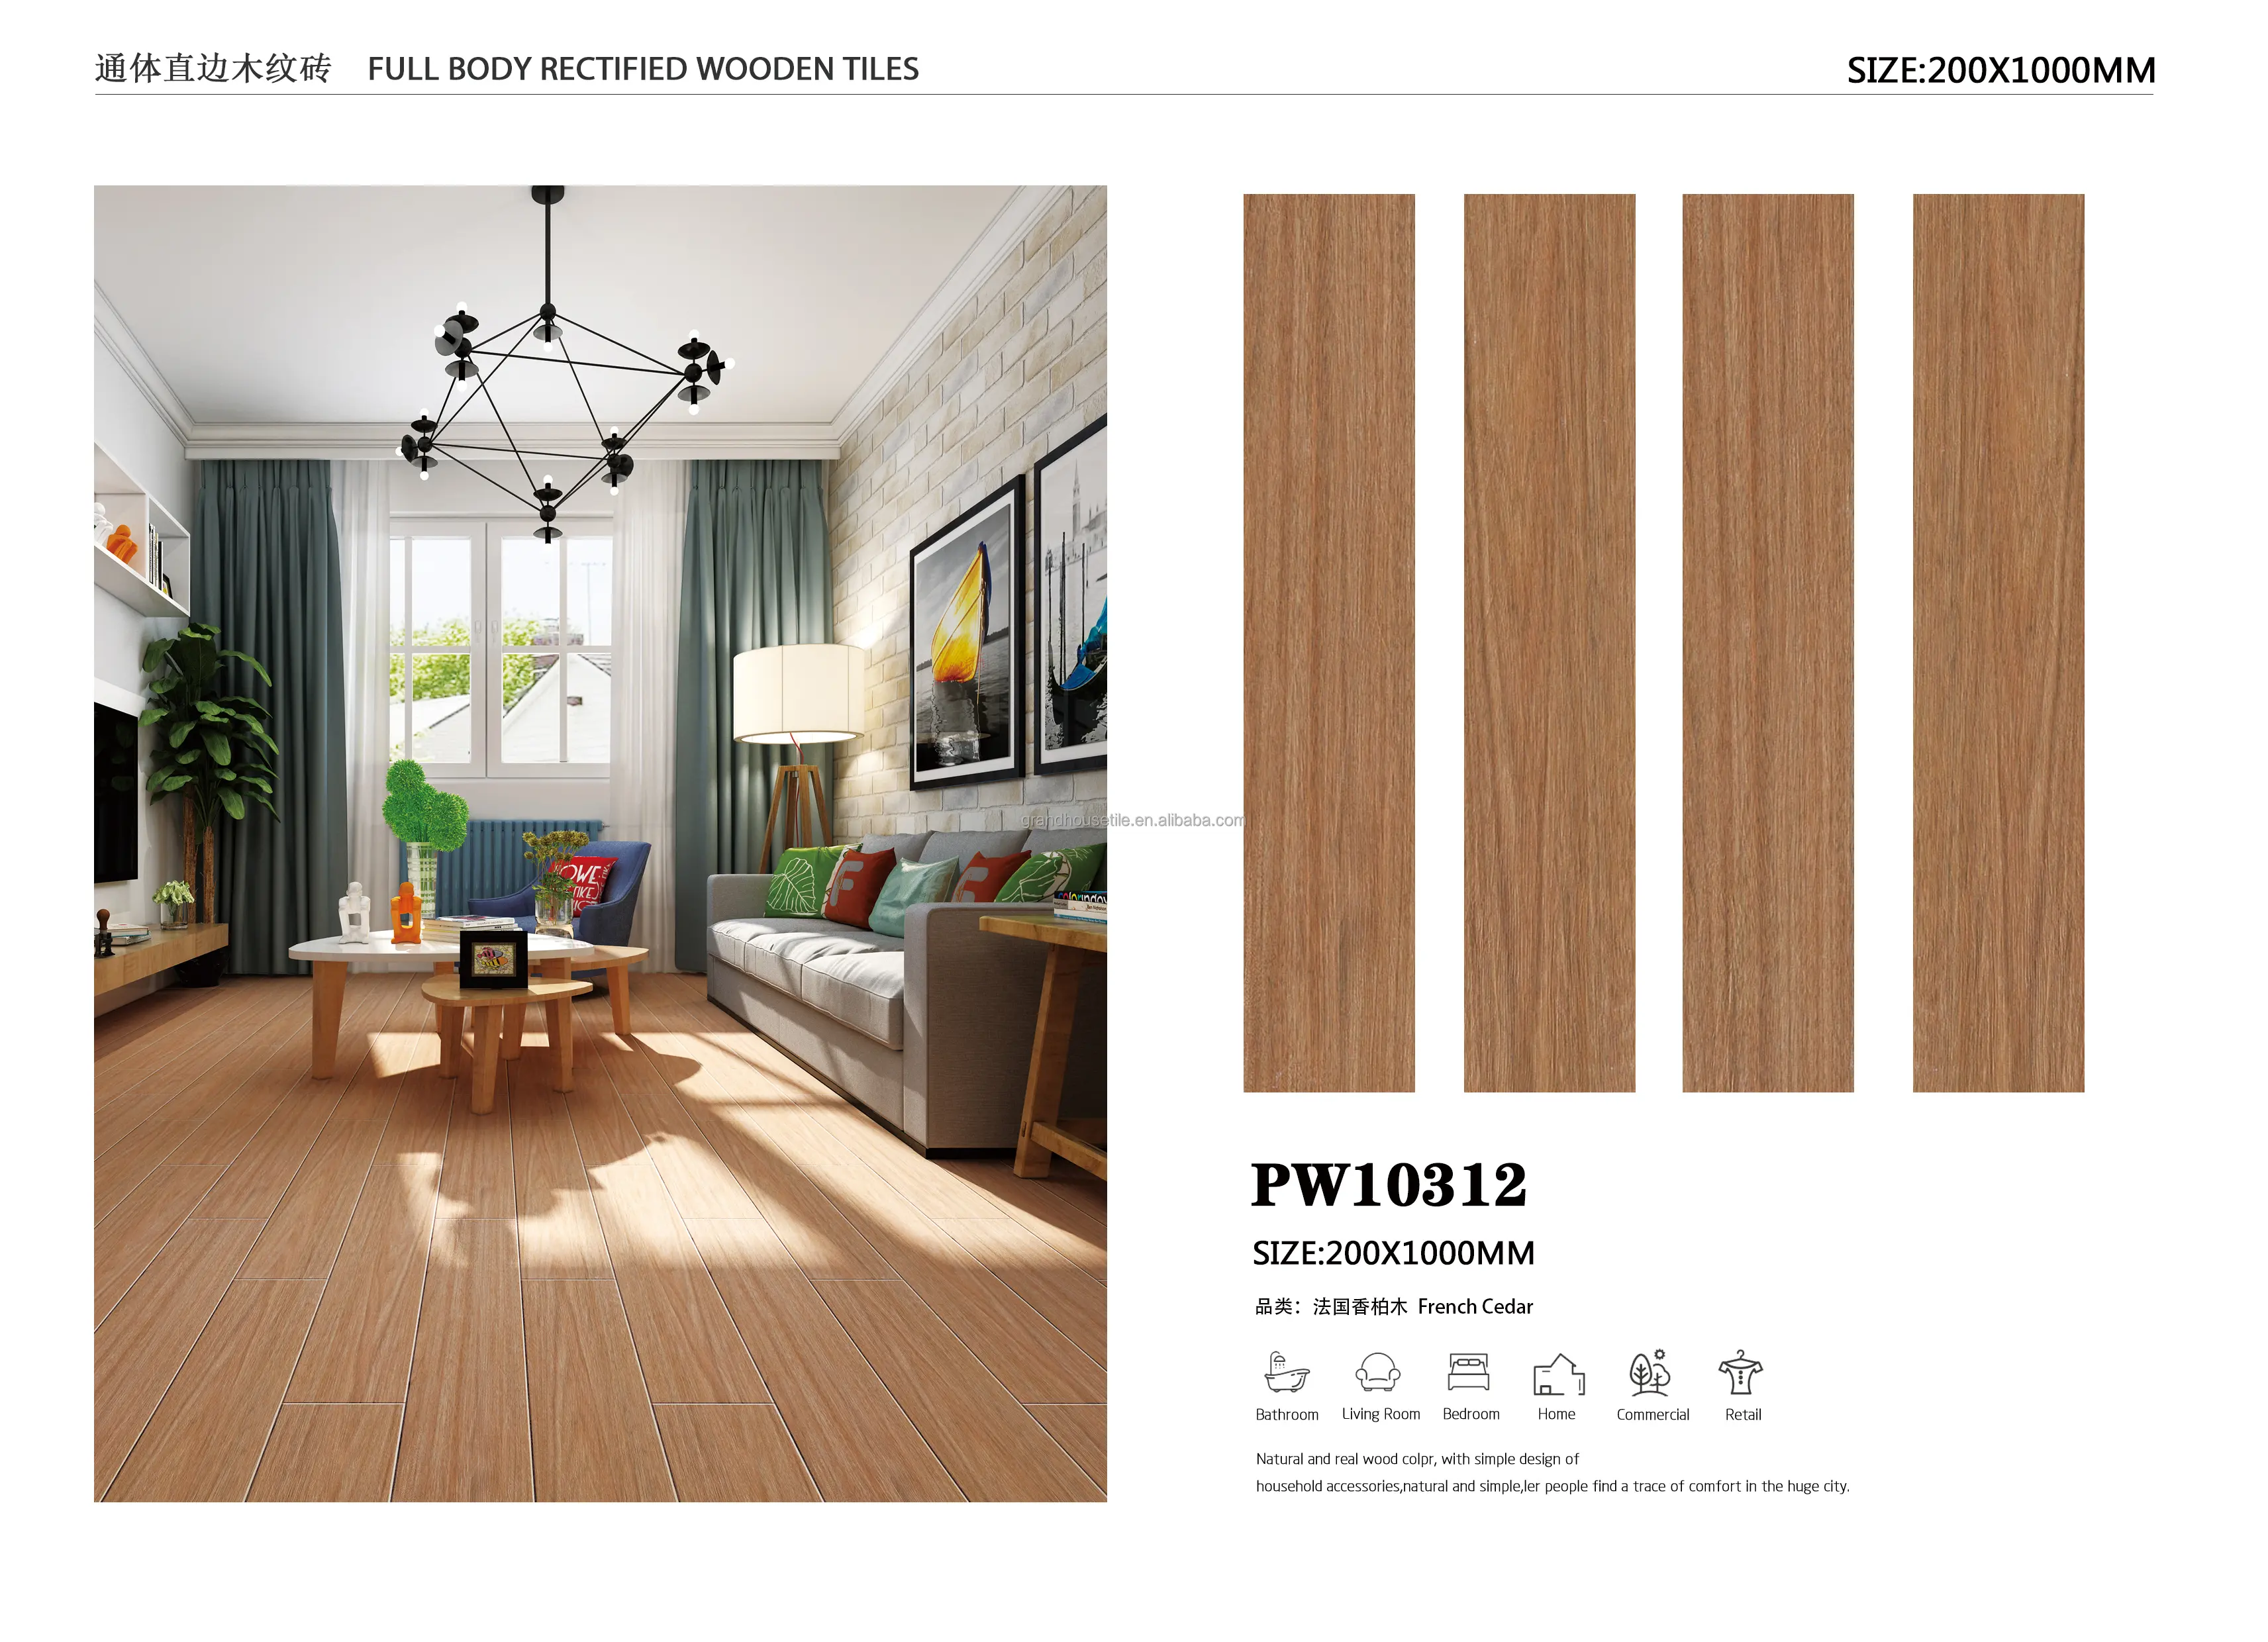 Foshan Высокое качество 200x1000 деревянная плитка для отеля деревянная плитка для квартиры деревянная керамика дом деревянная порчеланато